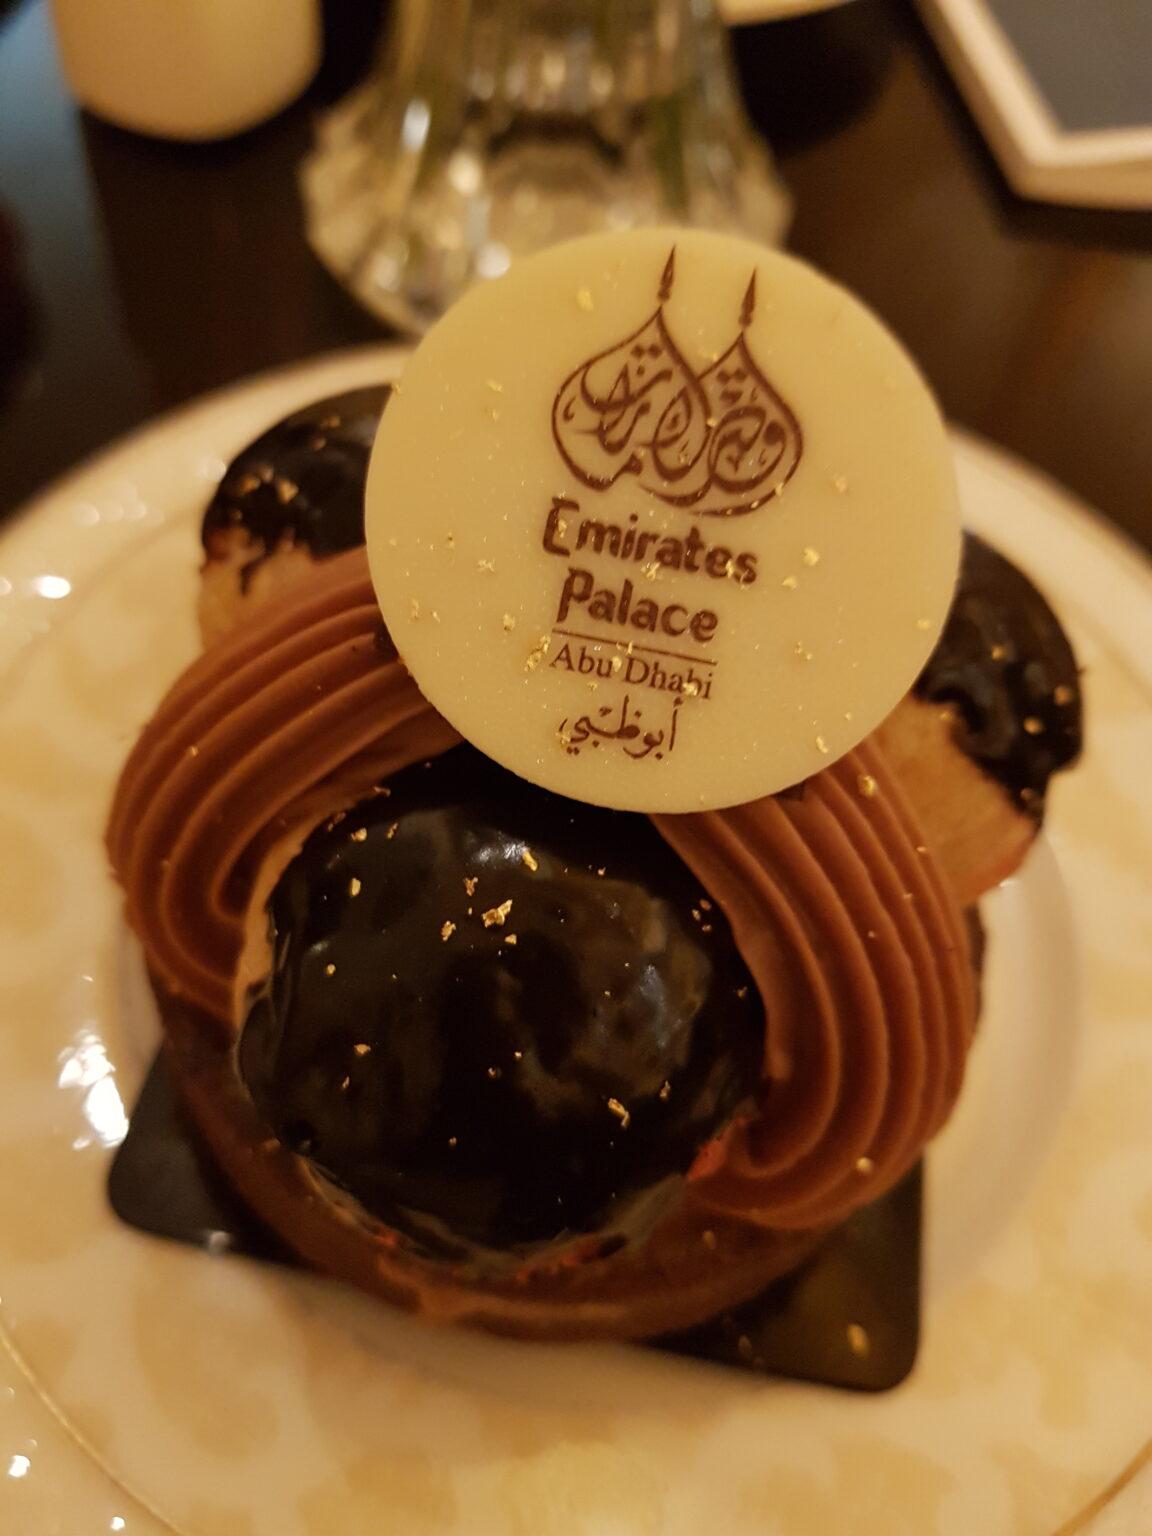 Pálás Emirates Abu Dhabi Dome Café